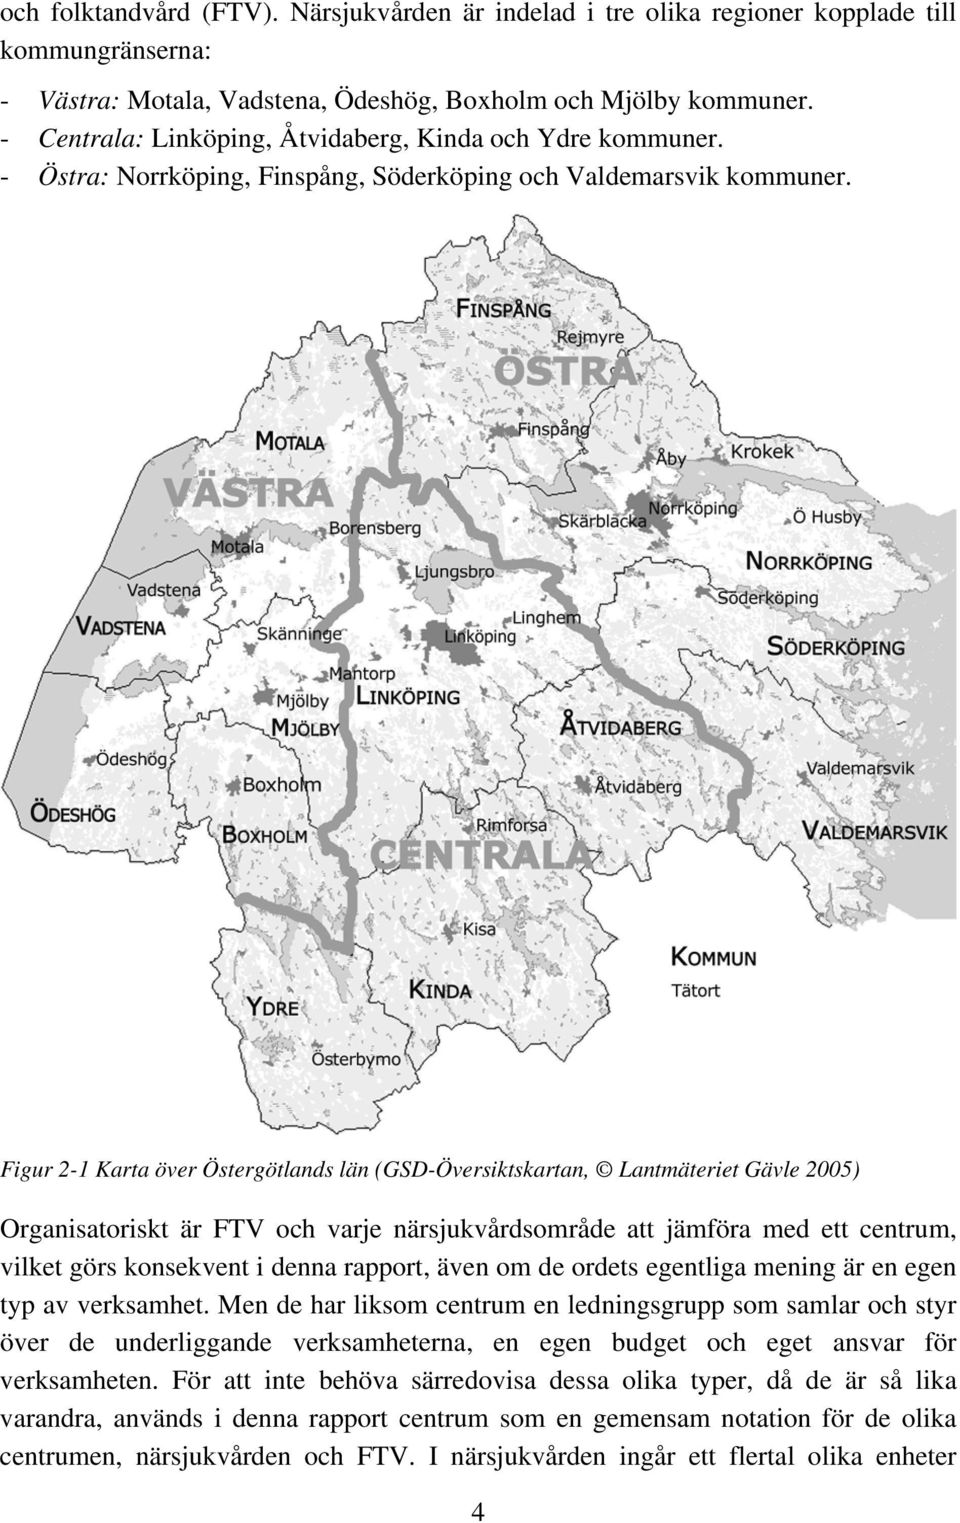 Figur 2-1 Karta över Östergötlands län (GSD-Översiktskartan, Lantmäteriet Gävle 2005) Organisatoriskt är FTV och varje närsjukvårdsområde att jämföra med ett centrum, vilket görs konsekvent i denna